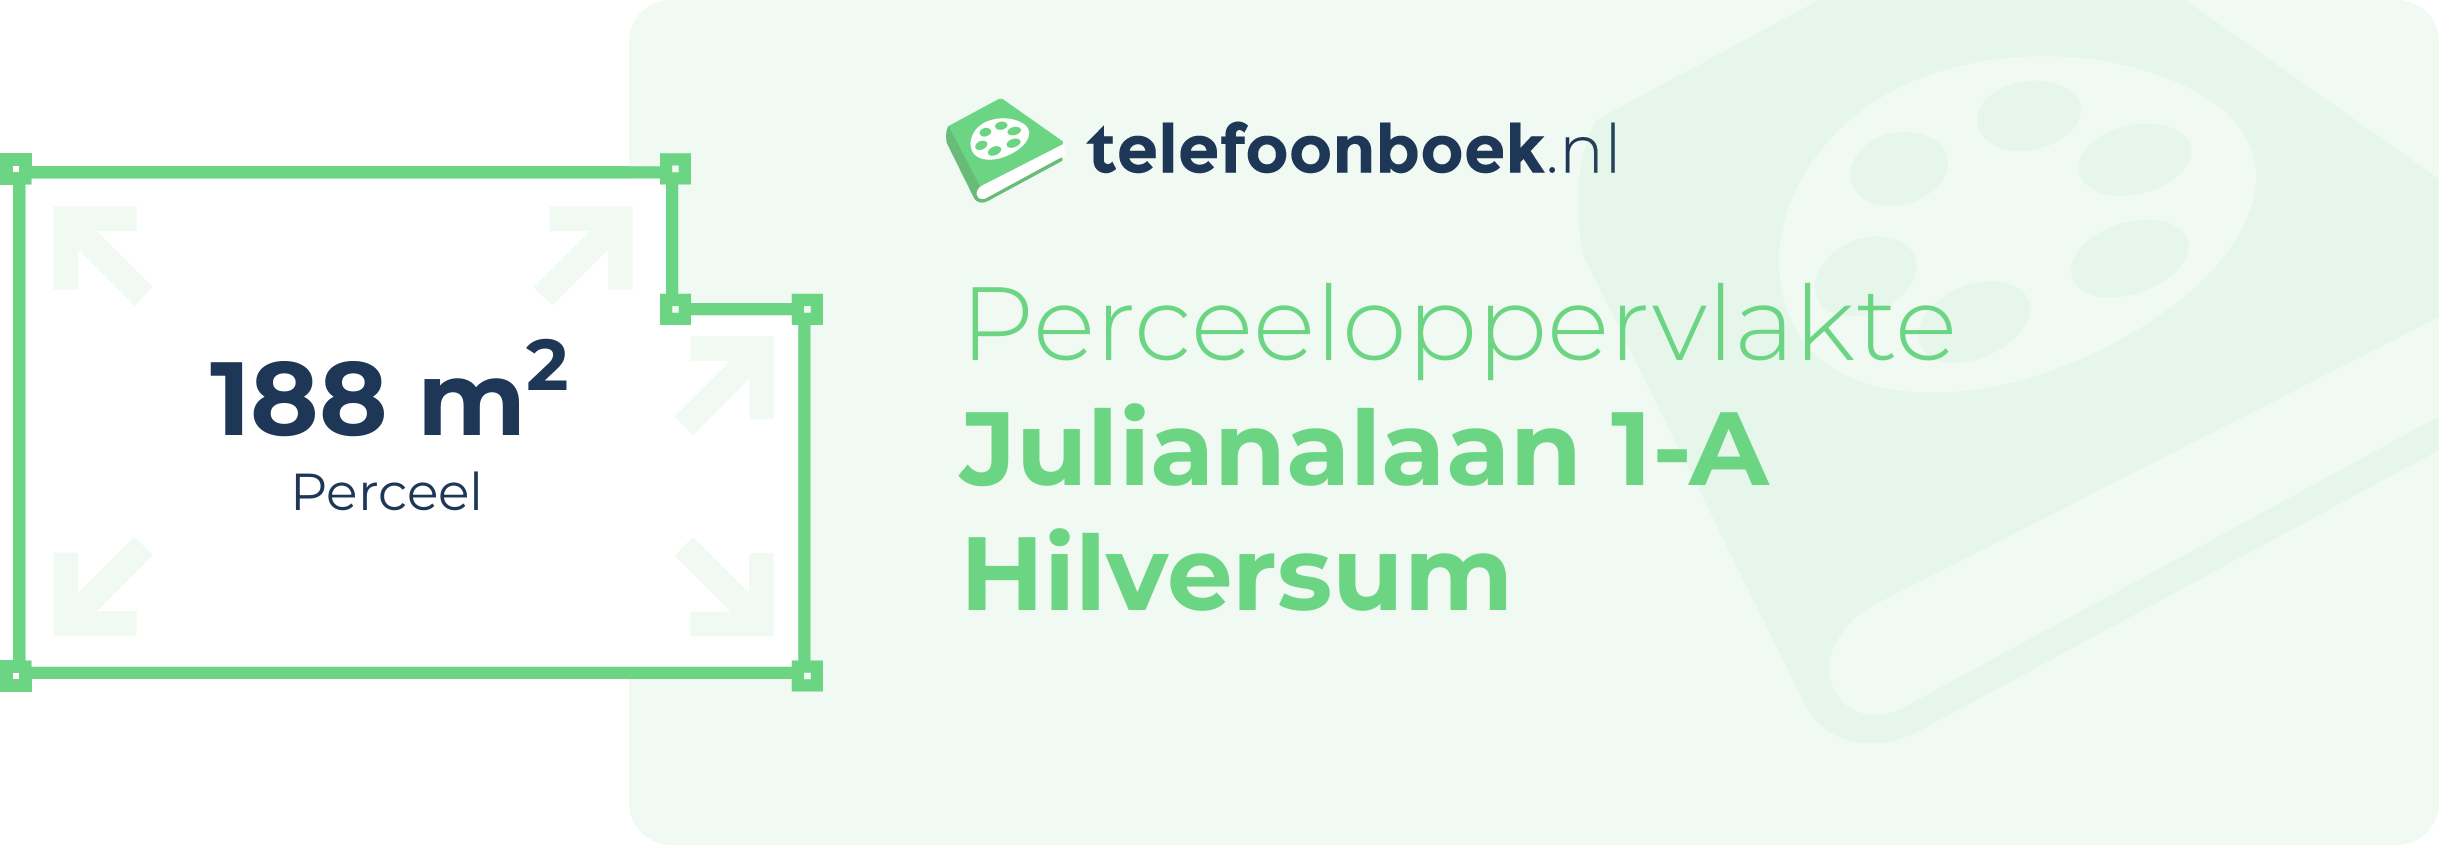 Perceeloppervlakte Julianalaan 1-A Hilversum